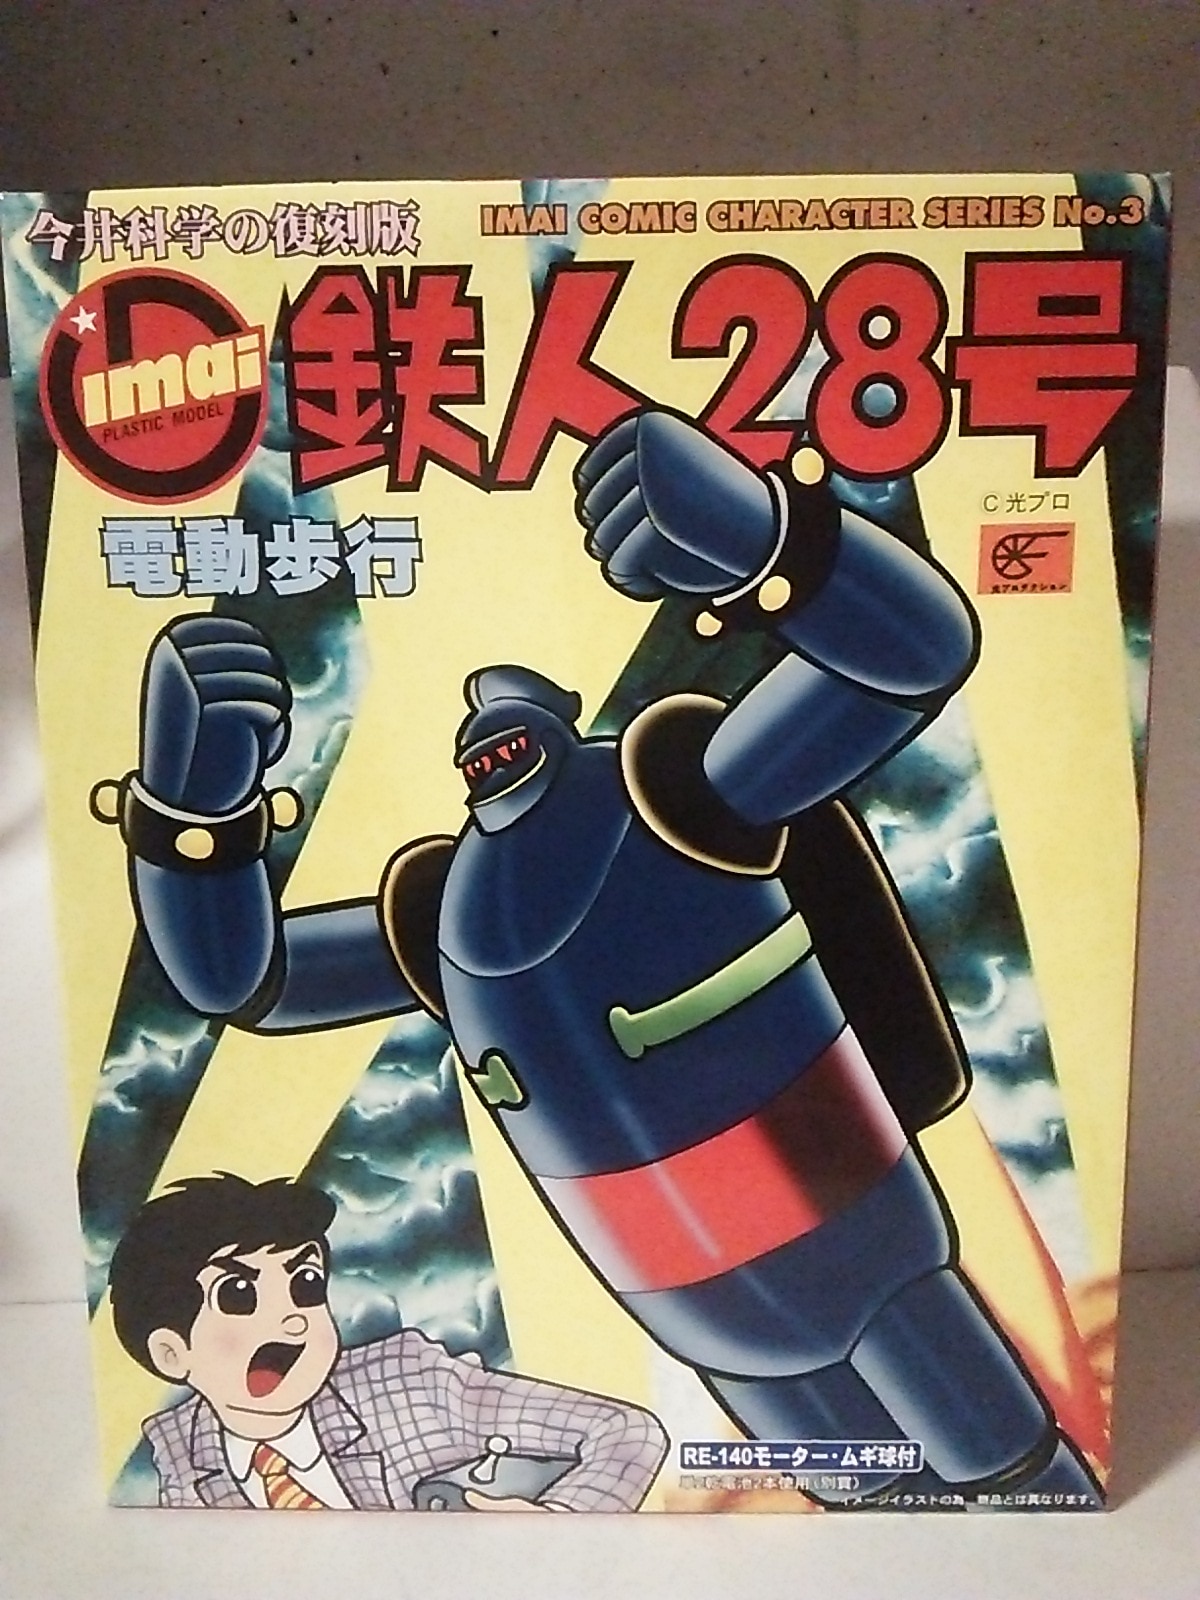 今井科学の復刻版 鉄人28号 プラモデル - プラモデル